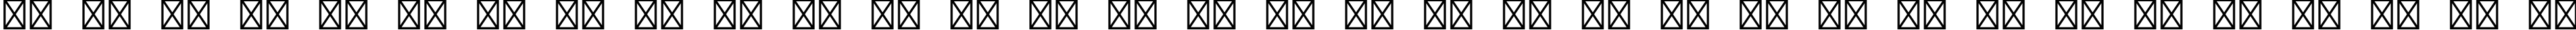 Пример написания русского алфавита шрифтом Courier Std Medium